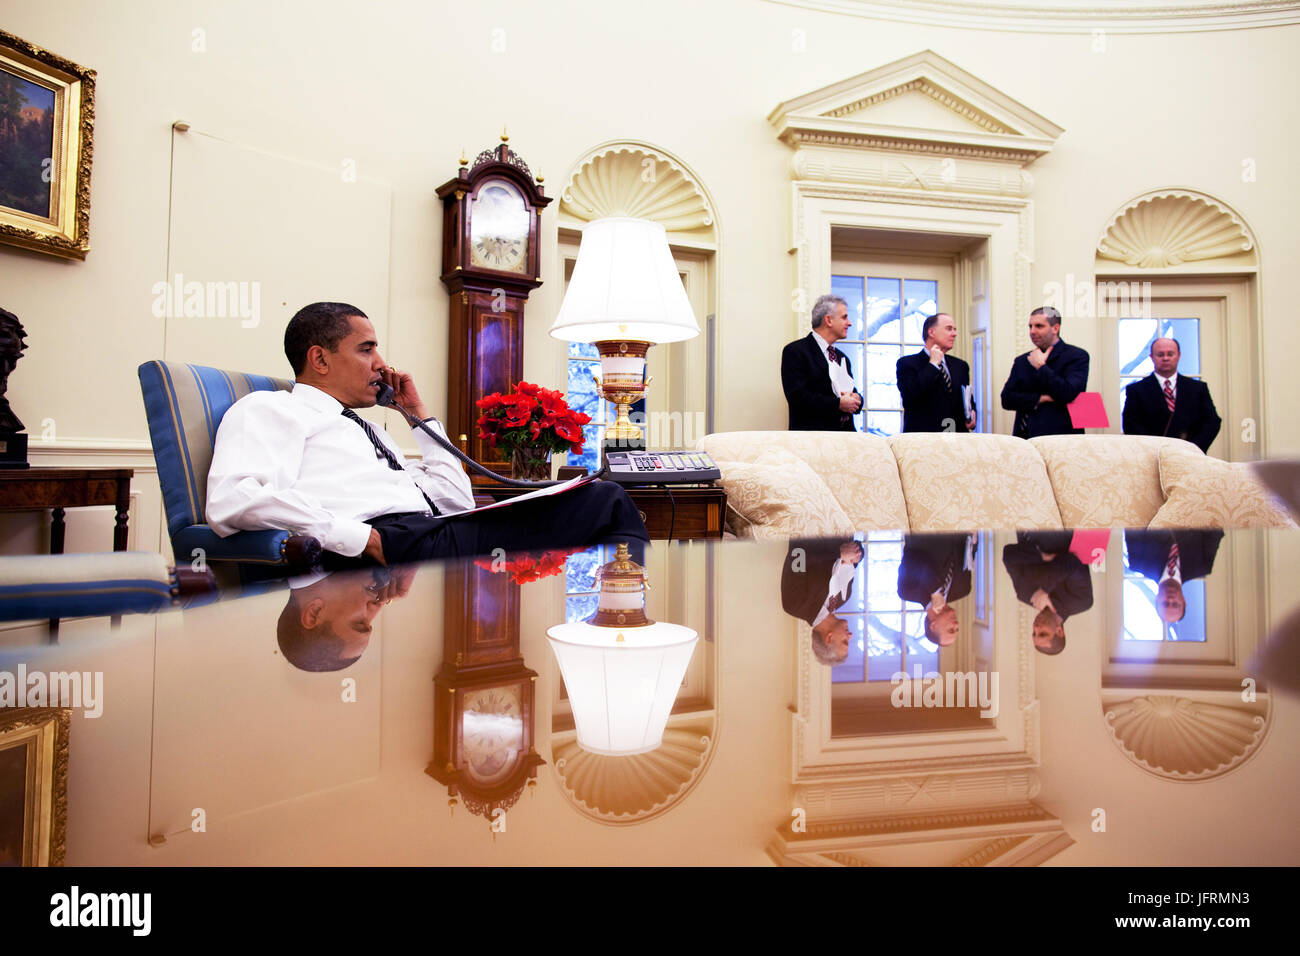 Le président Barack Obama appelle les dirigeants étrangers dans le bureau ovale de la Maison Blanche 26/01/09. Photo Officiel de la Maison Blanche par Pete Souza Banque D'Images